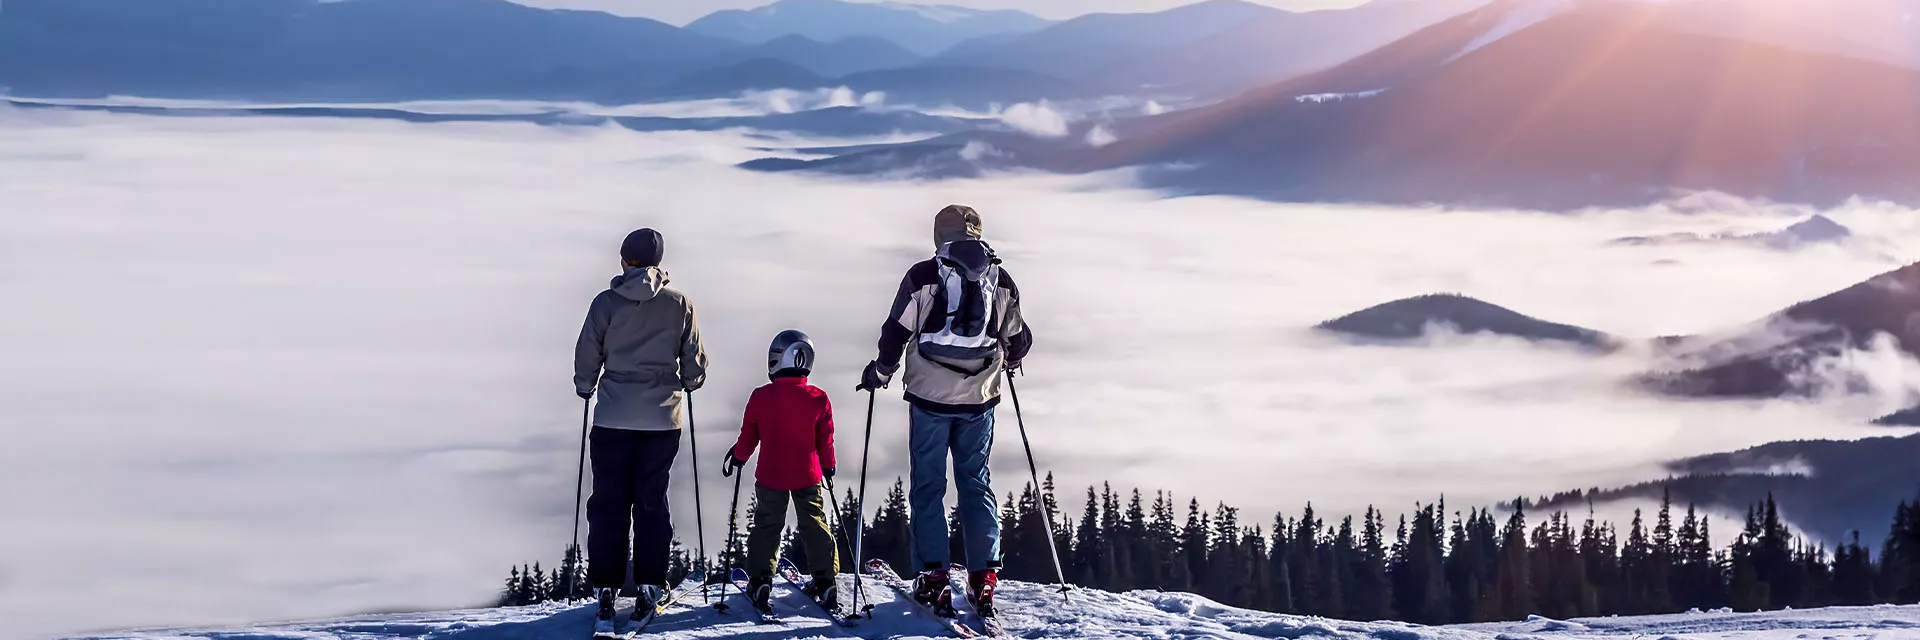 Vos vacances de janvier au ski